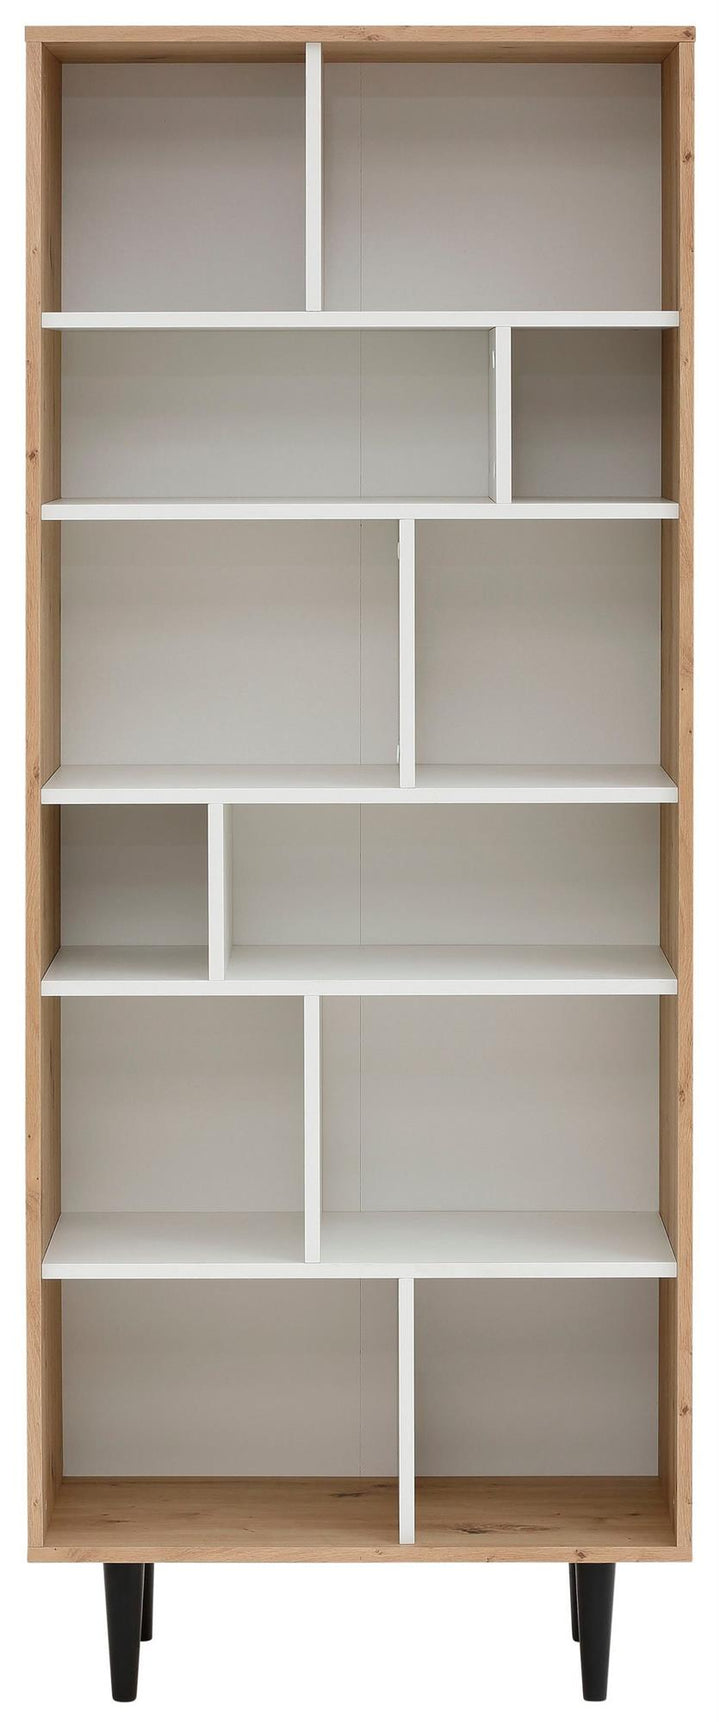 Rakel Modern Bookcase with Many Shelves - Light Oak